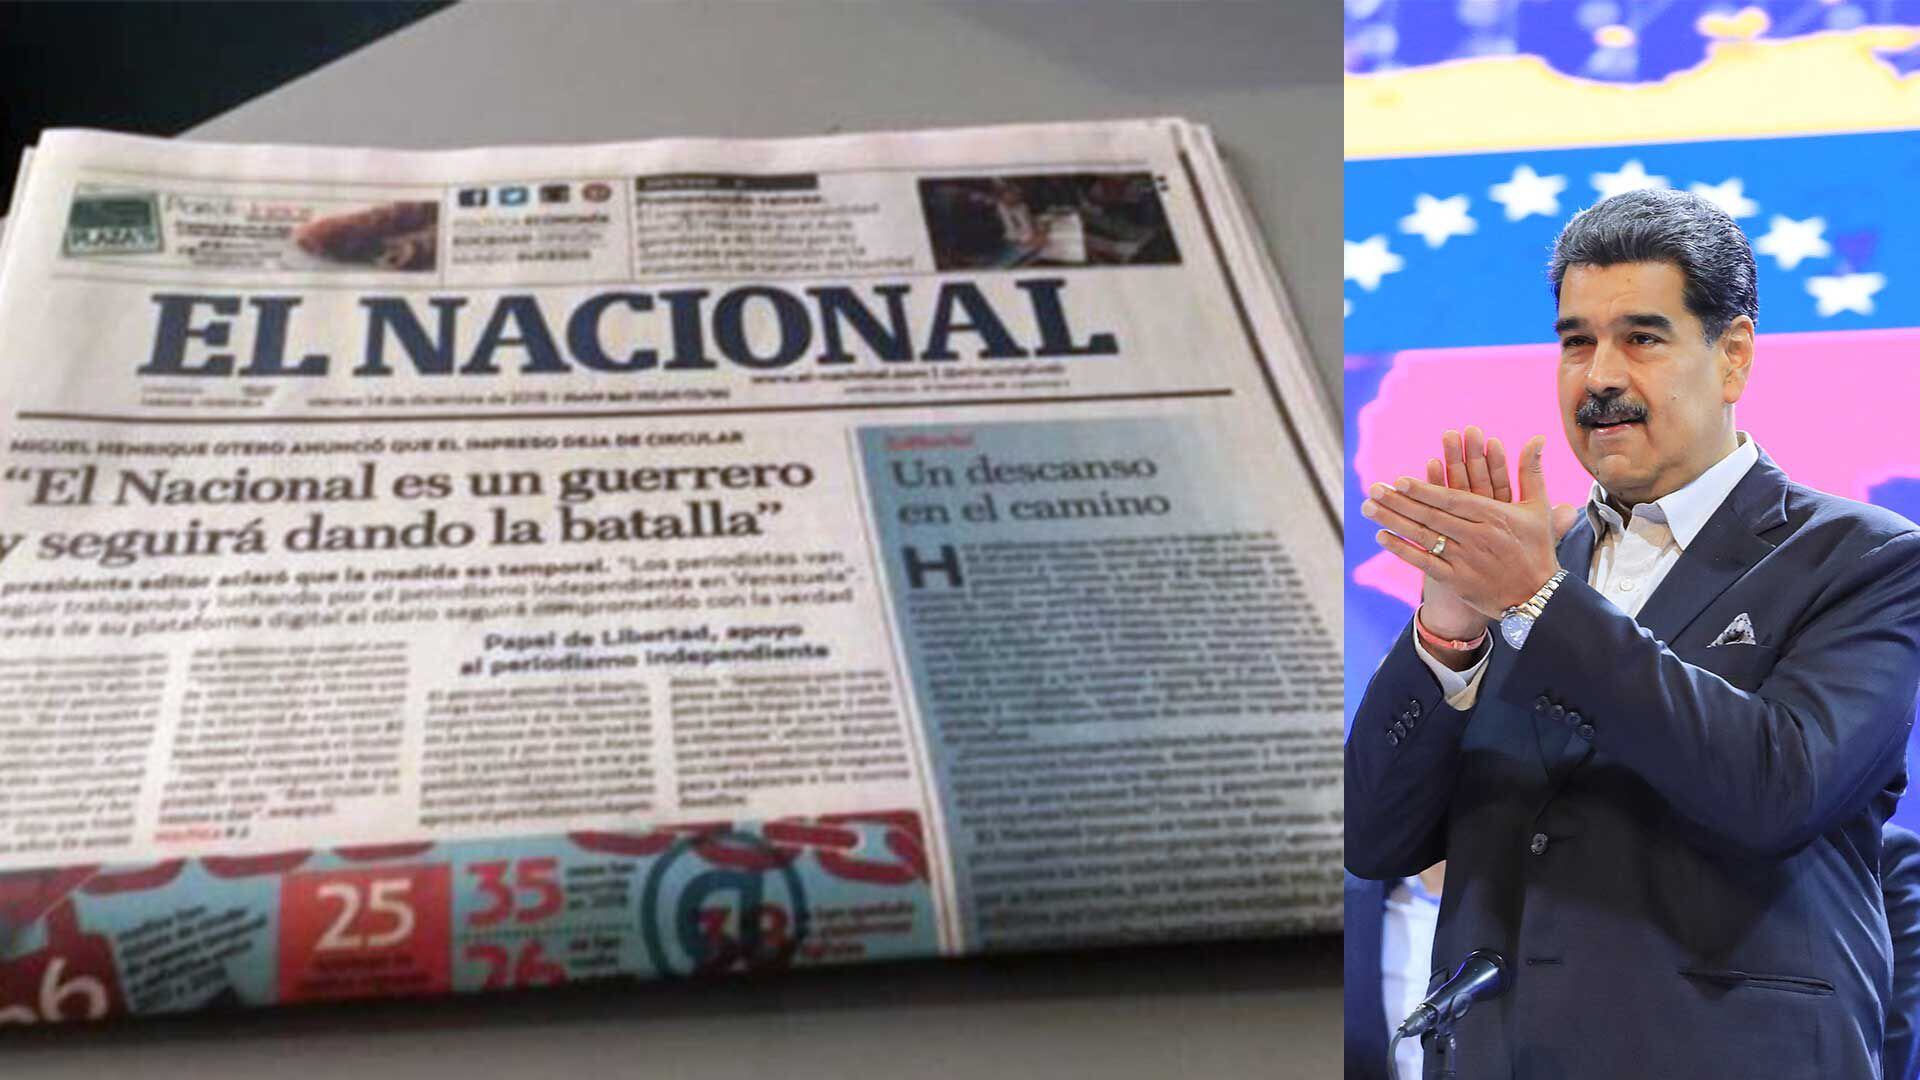 'El Nacional' enfrenta bloqueos y censura del régimen de Nicolás Maduro, denuncian arbitrariedad.